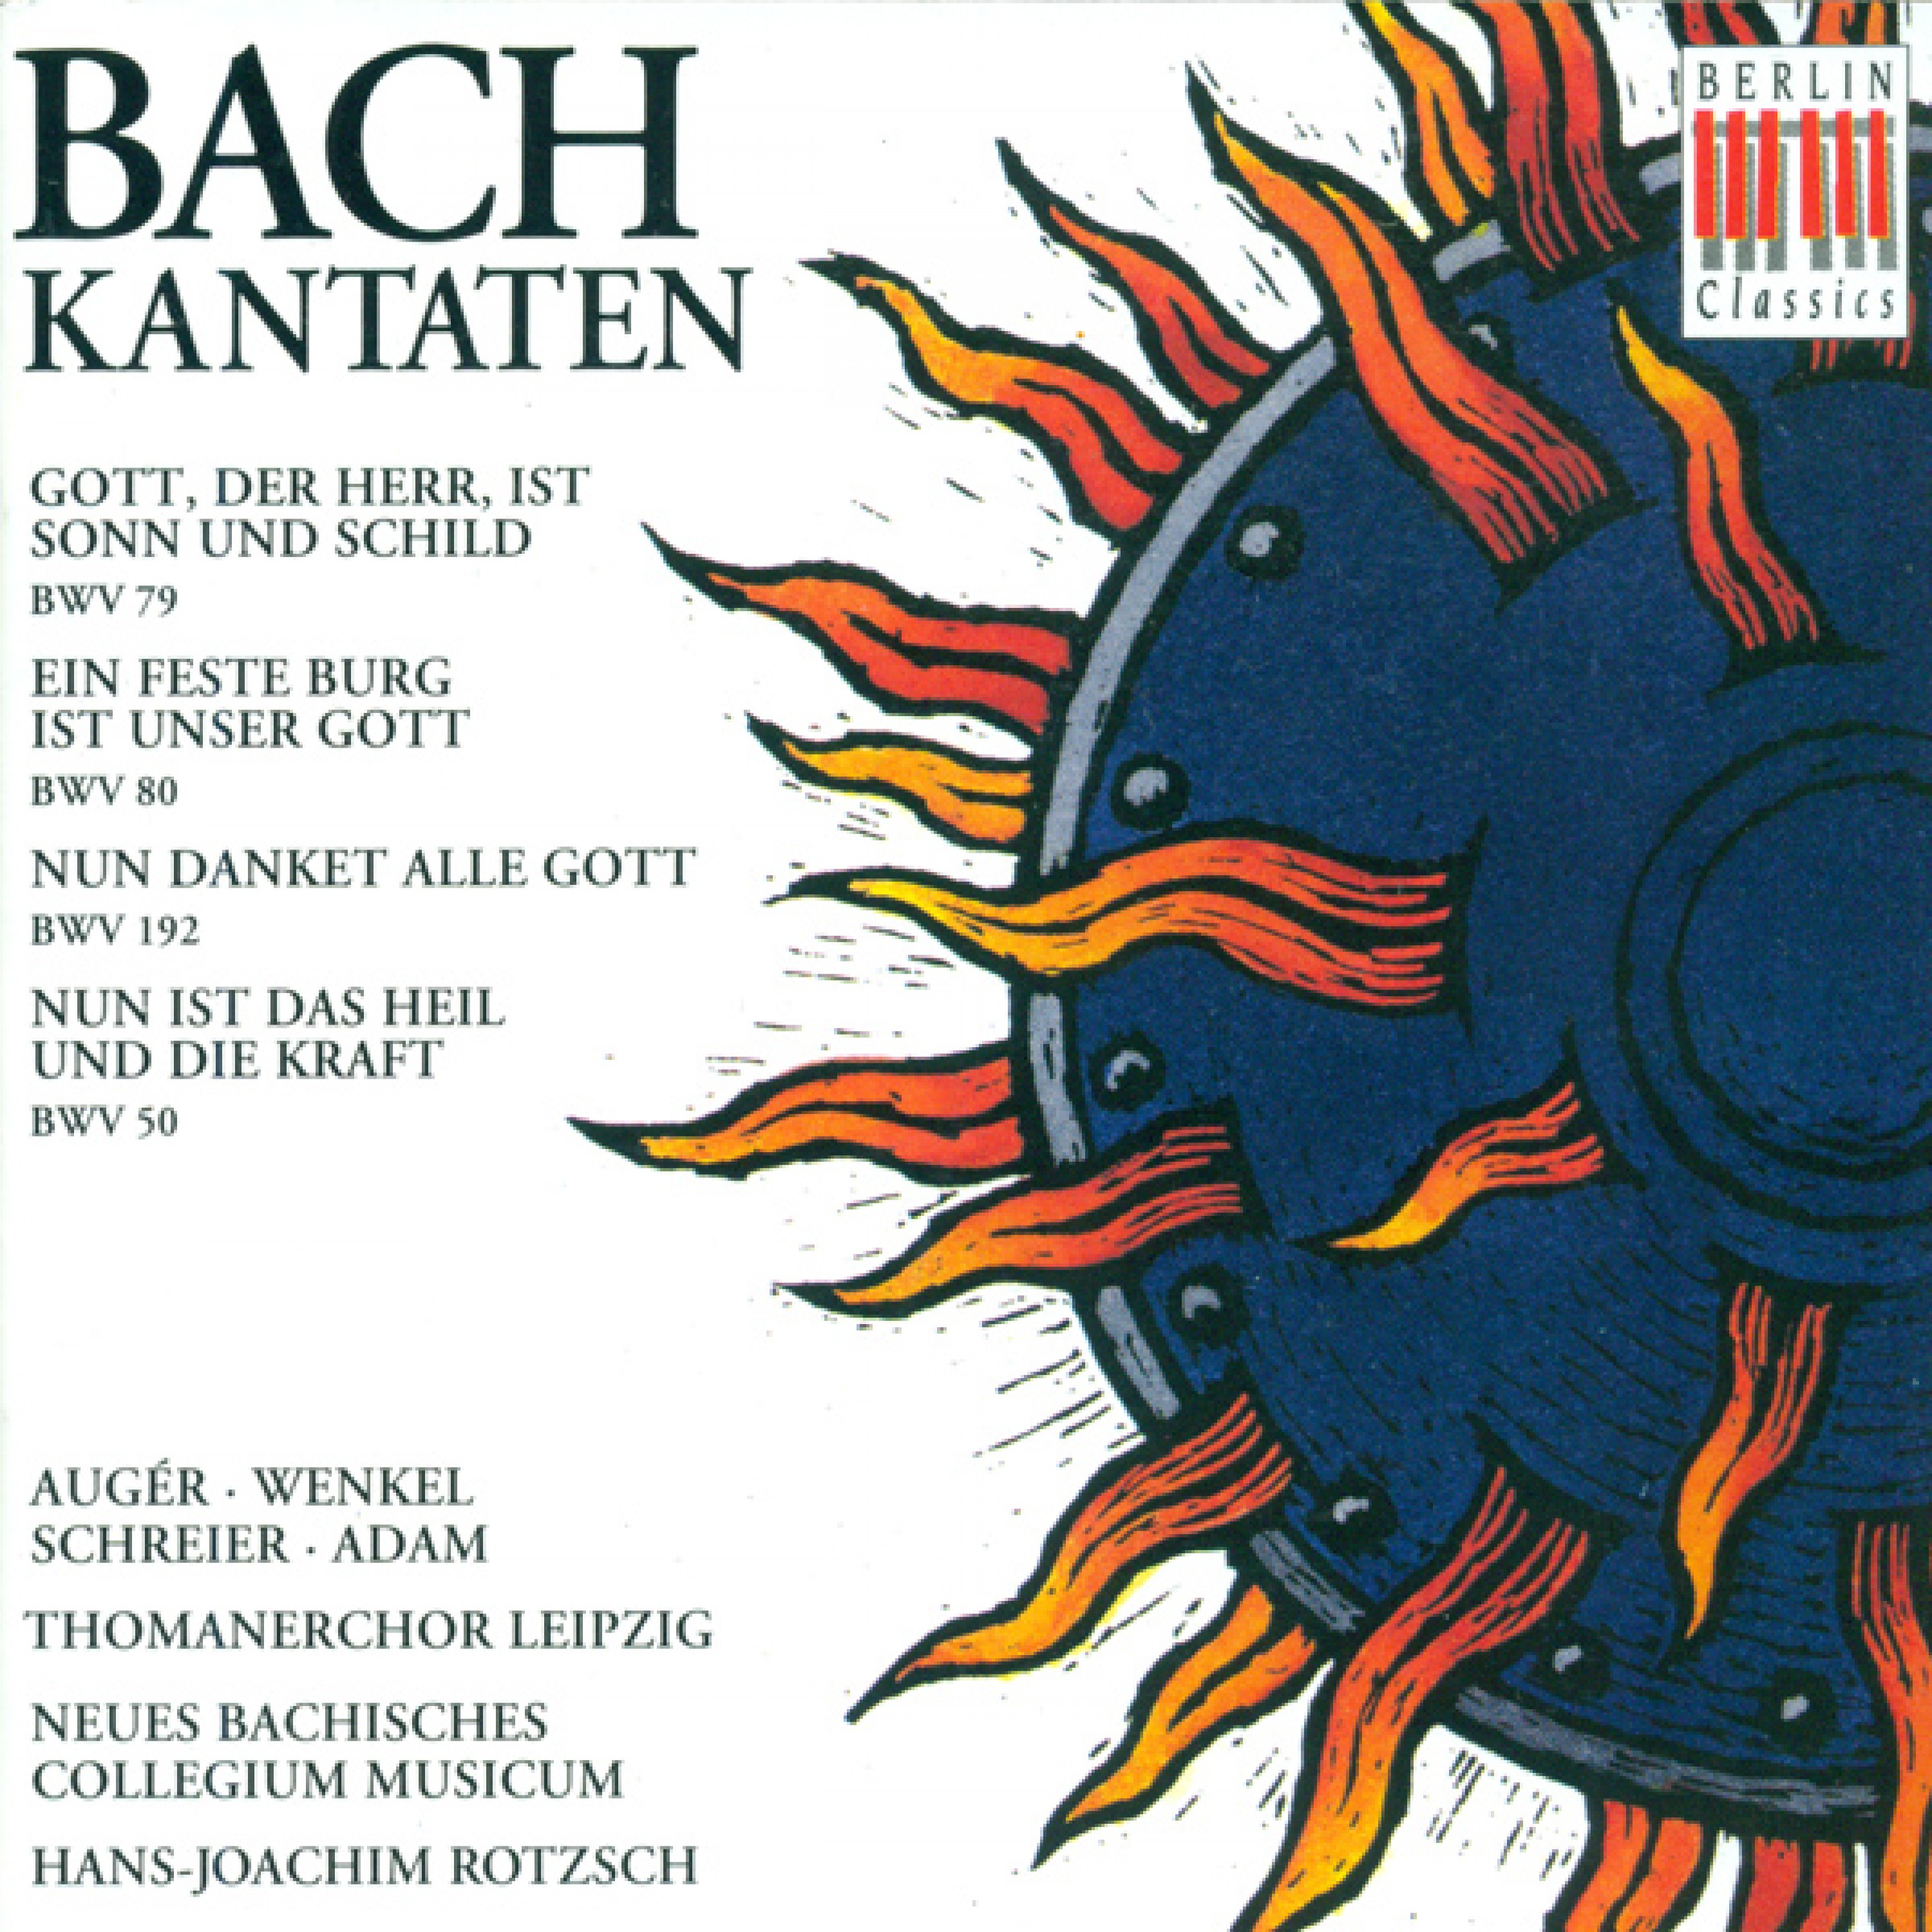 Nun danket alle Gott, BWV 192: Duet: Der ewig reiche Gott (Soprano, Bass)